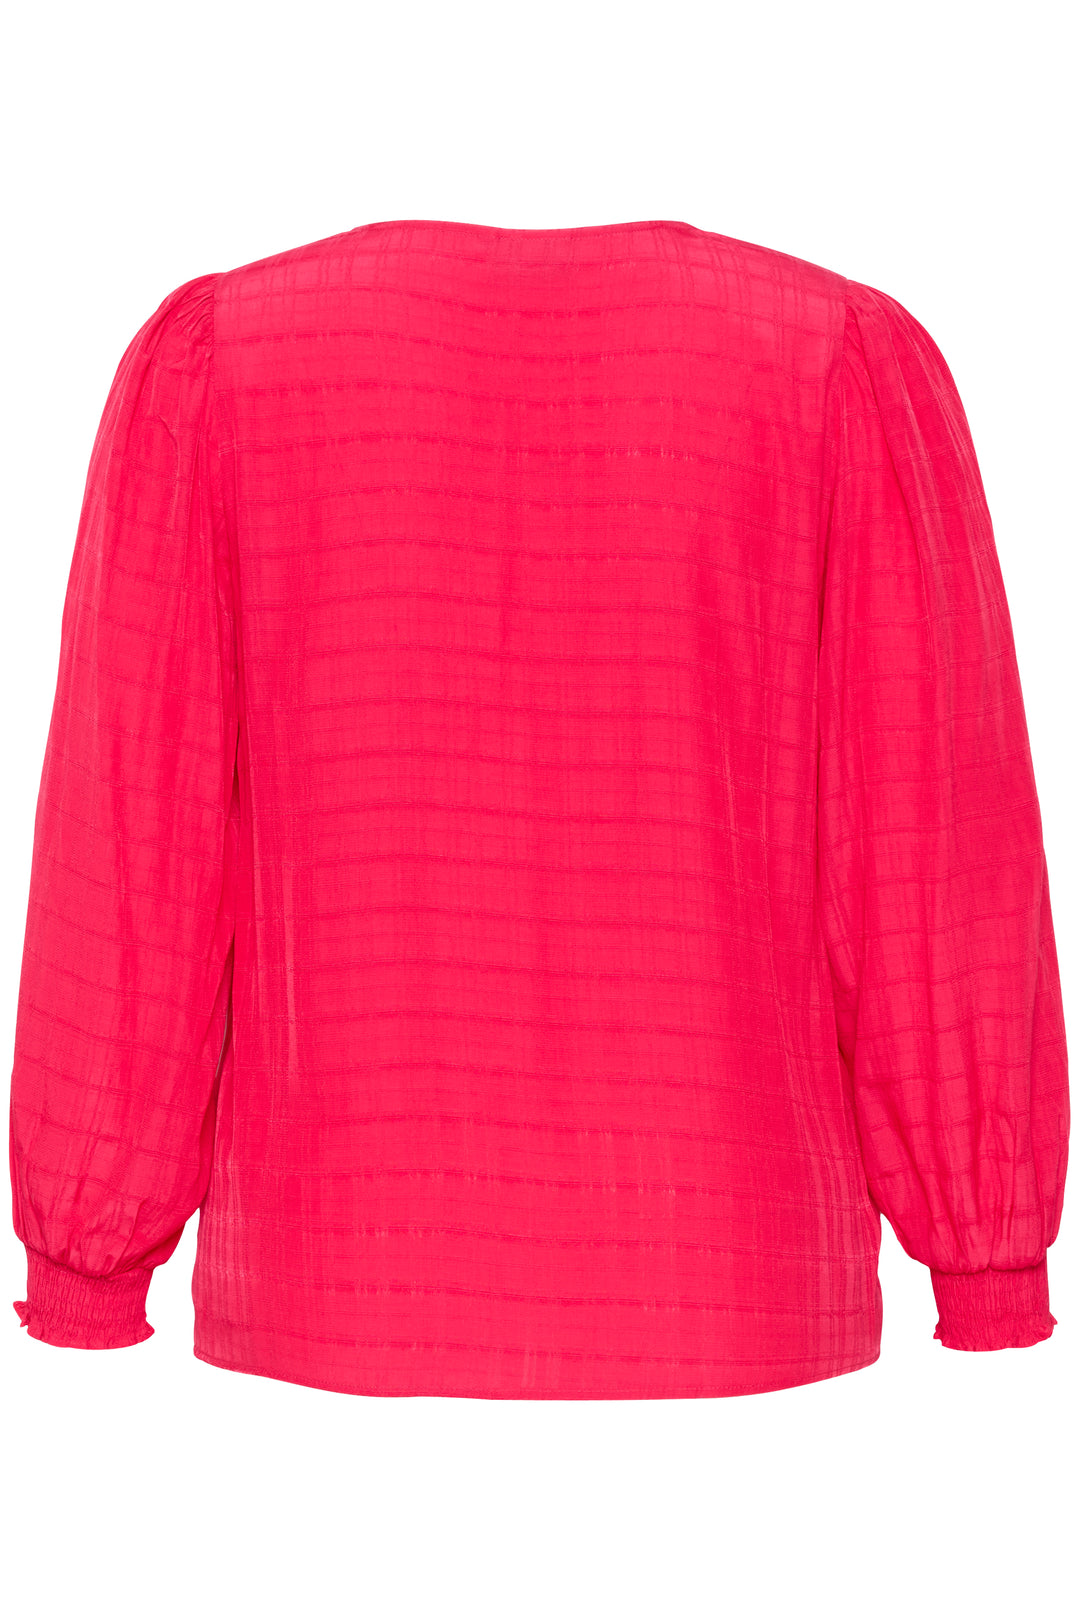 tijdloze hot pink blouse-kaffe curve-